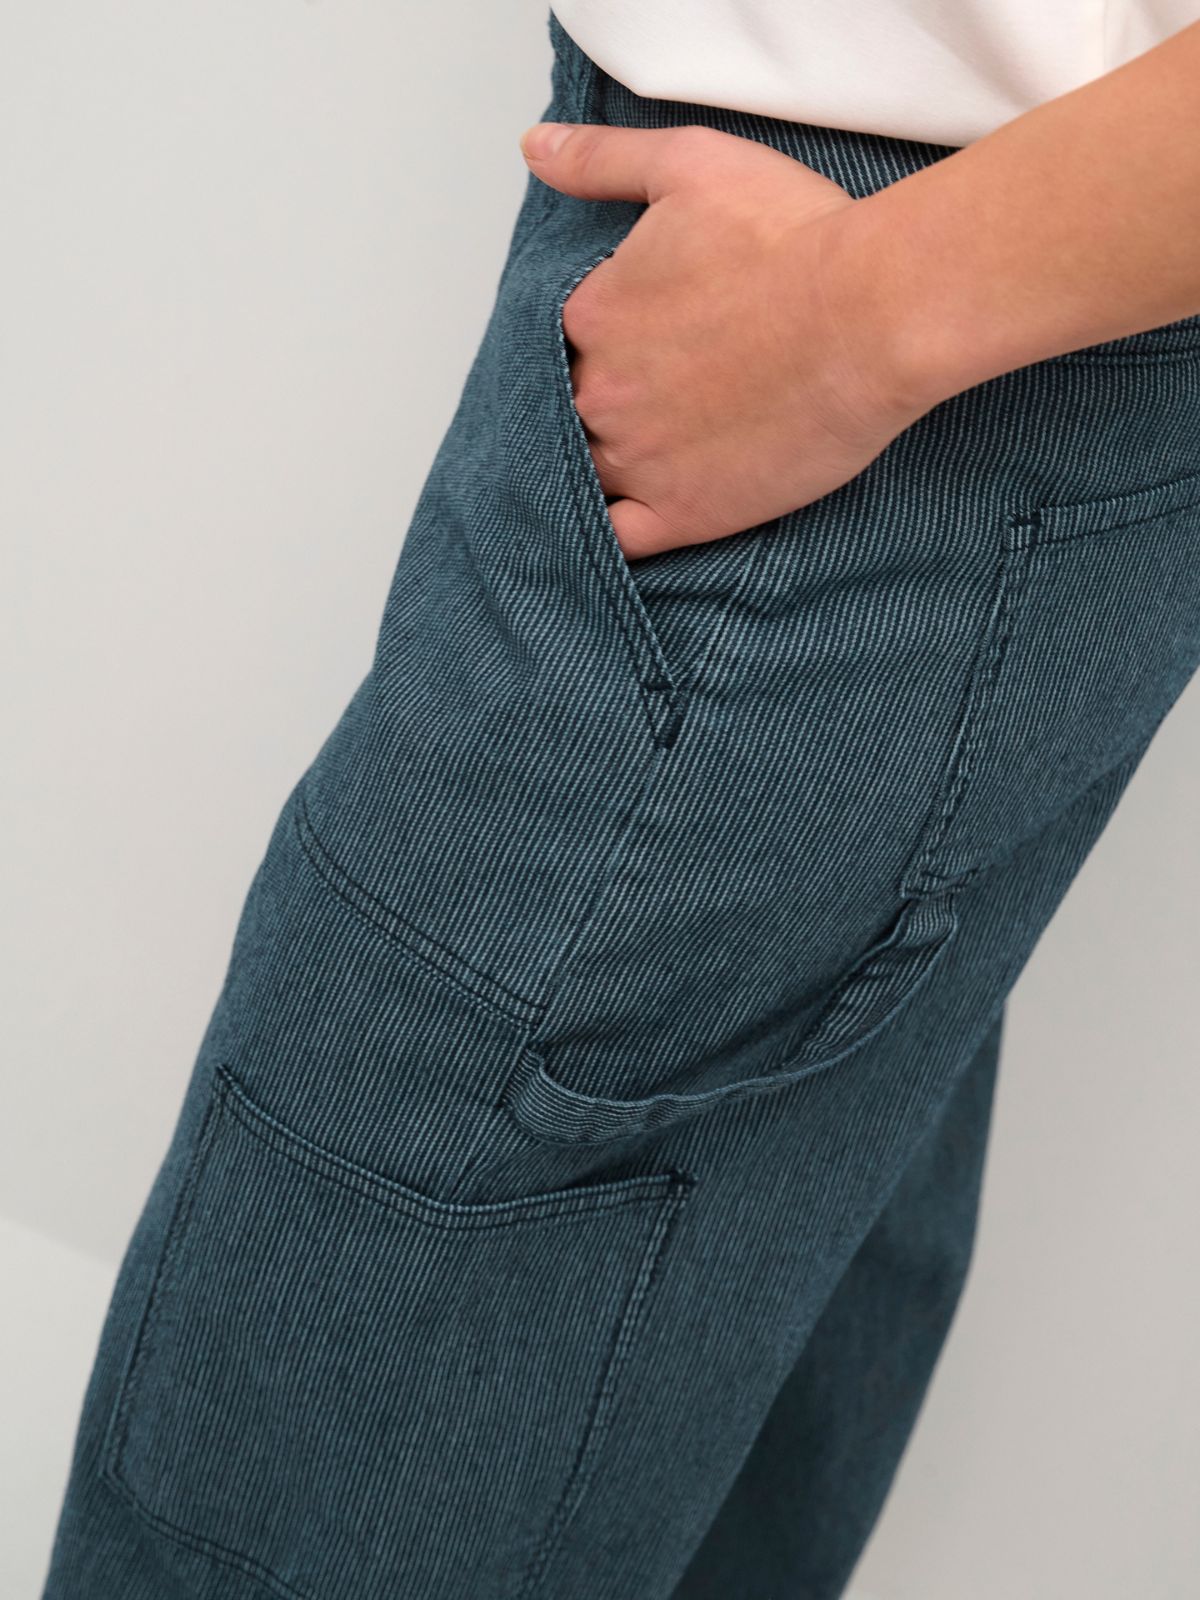 Playful tidevand Valg Hope jeans | Culture - shop nu > Gundtoft